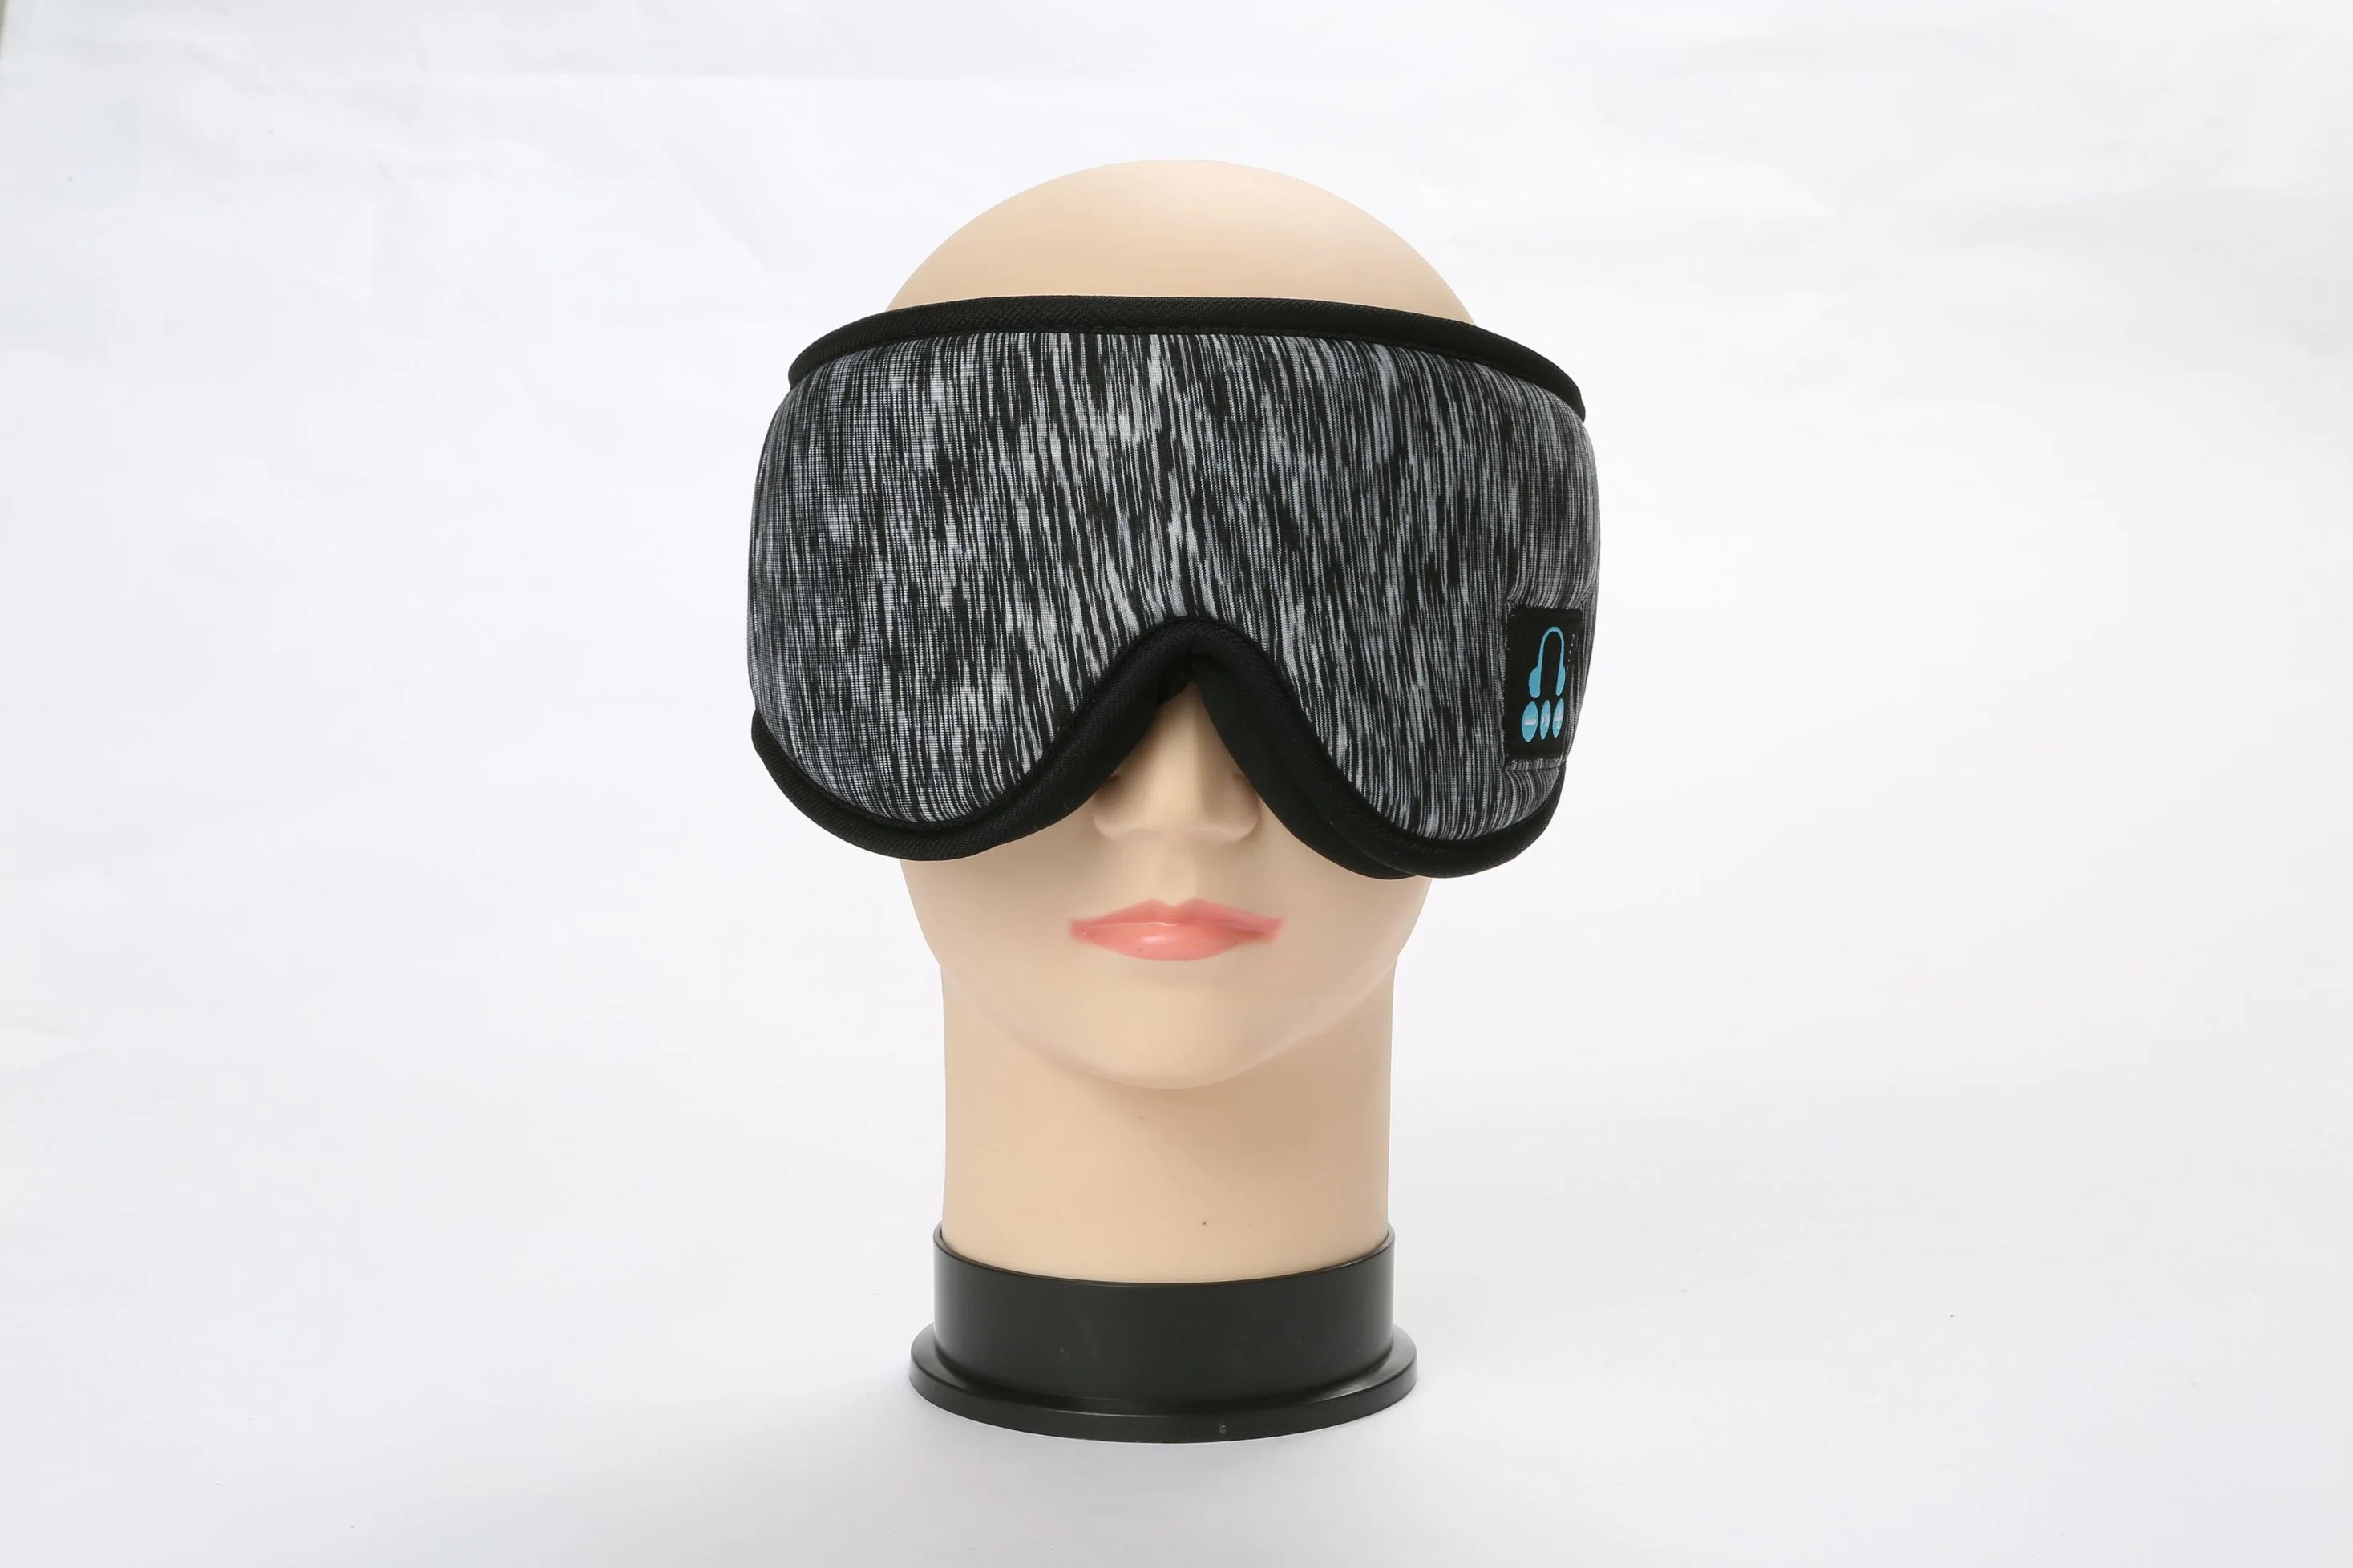 Le sommeil Casque bandeau Bluetooth sans fil - 2 en 1 Eye Mask de couchage Casque, bas de Noël Cadeaux Stuffers anniversaire pour les femmes hommes écouteurs de la bande de tête